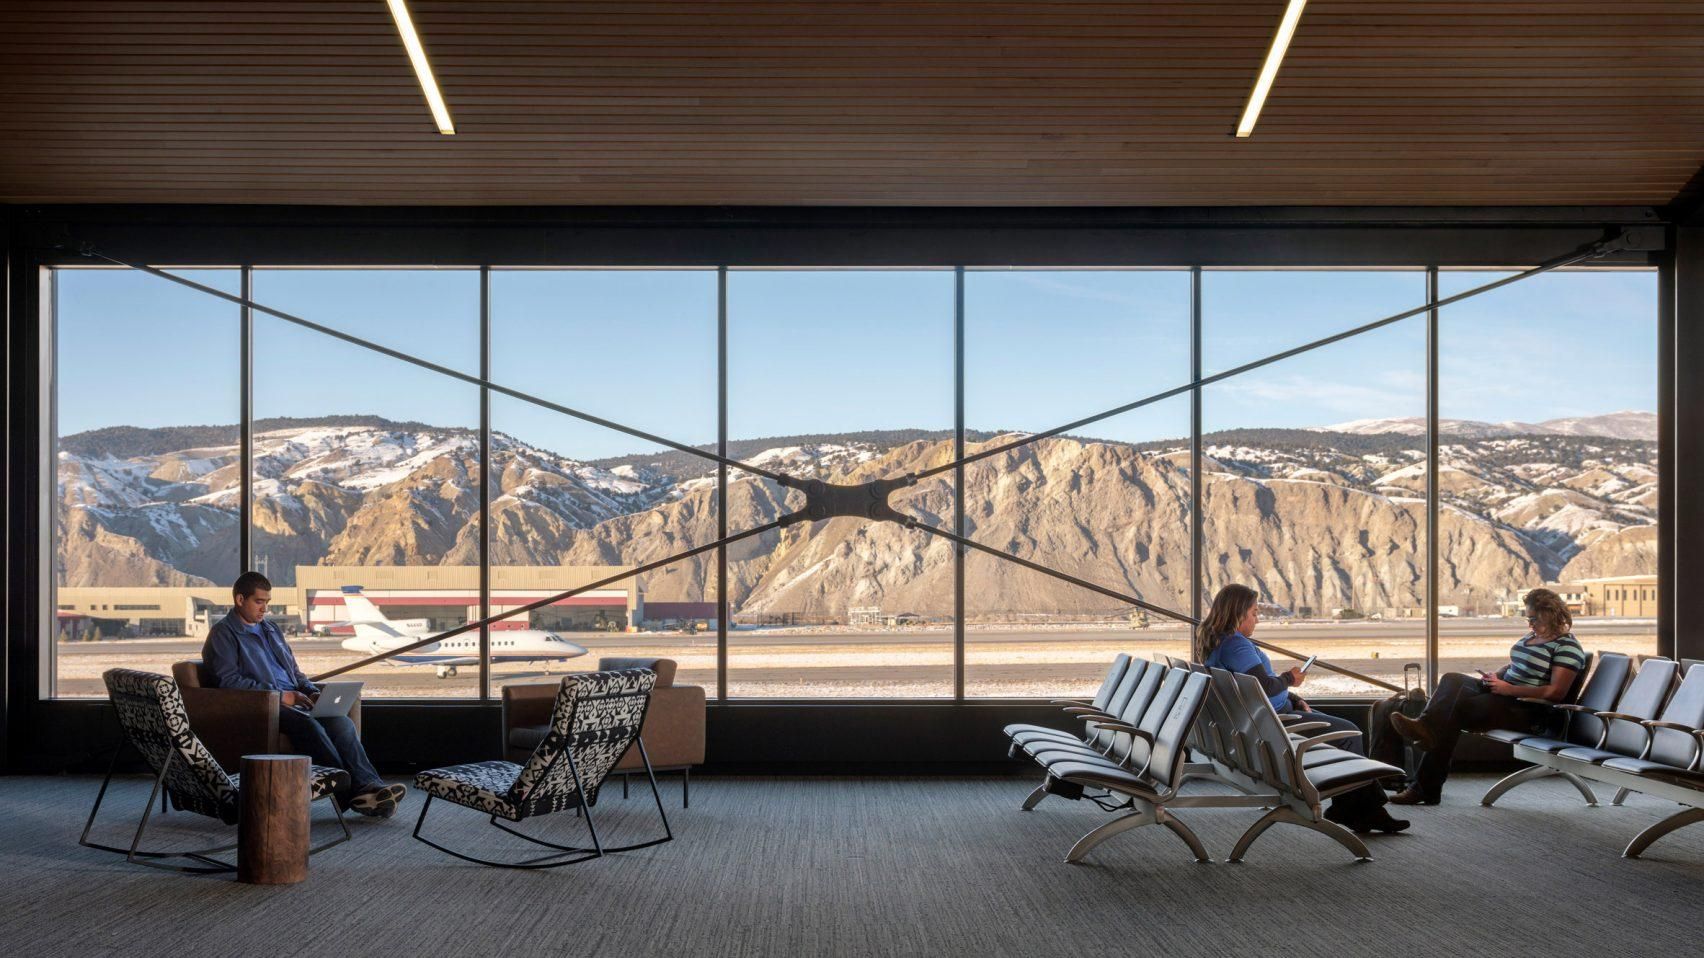 Камин в зале ожидания: фото уютного интерьера аэропорта в Колорадо